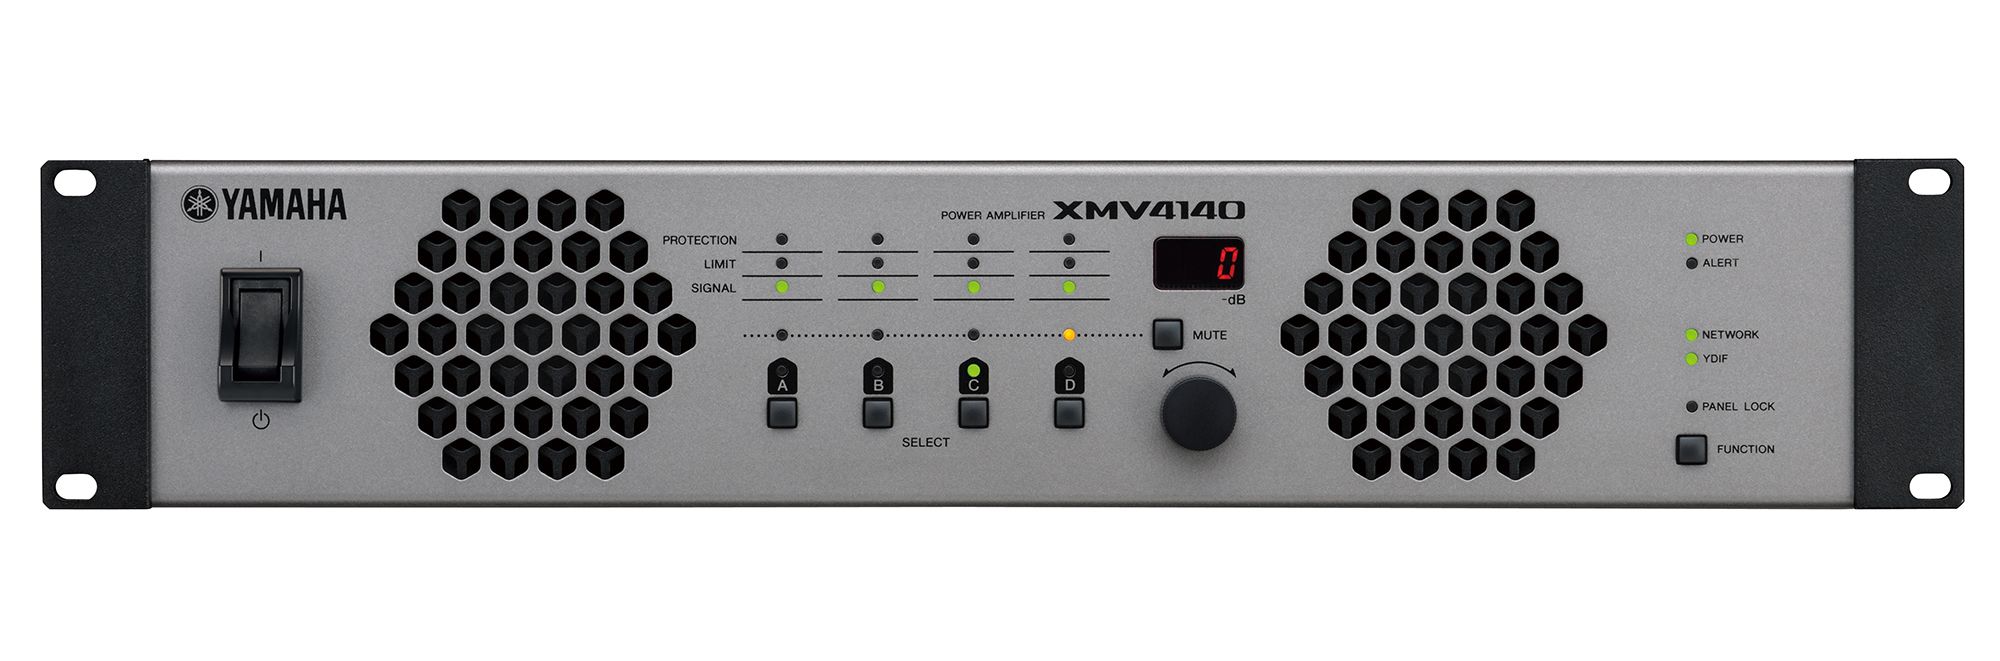 ヤマハ | XMV Series - パワーアンプ - 概要